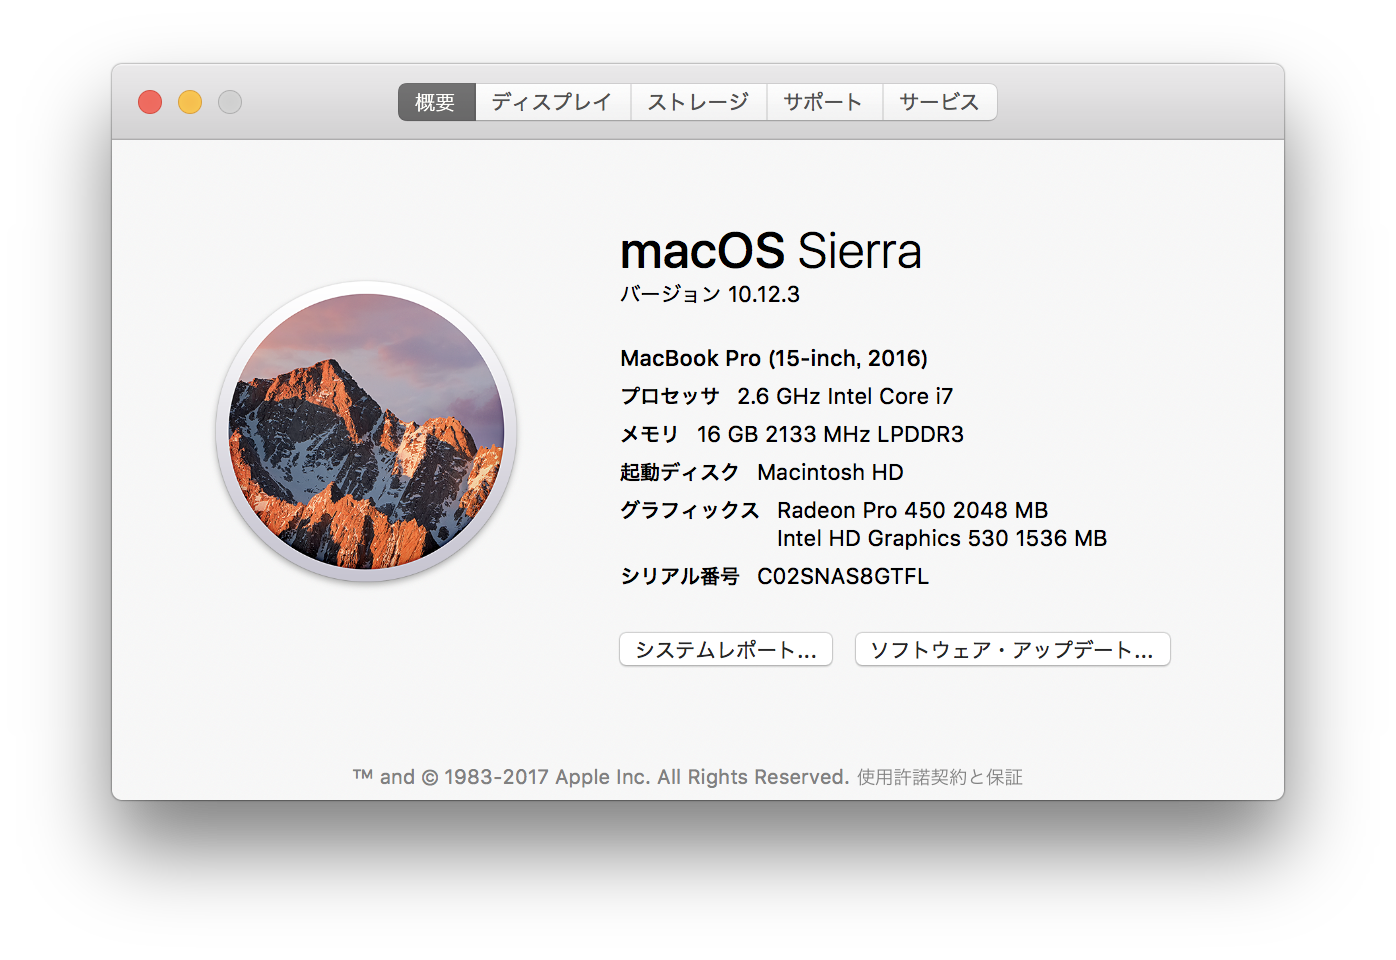 MacBook Pro 15inch, 2016